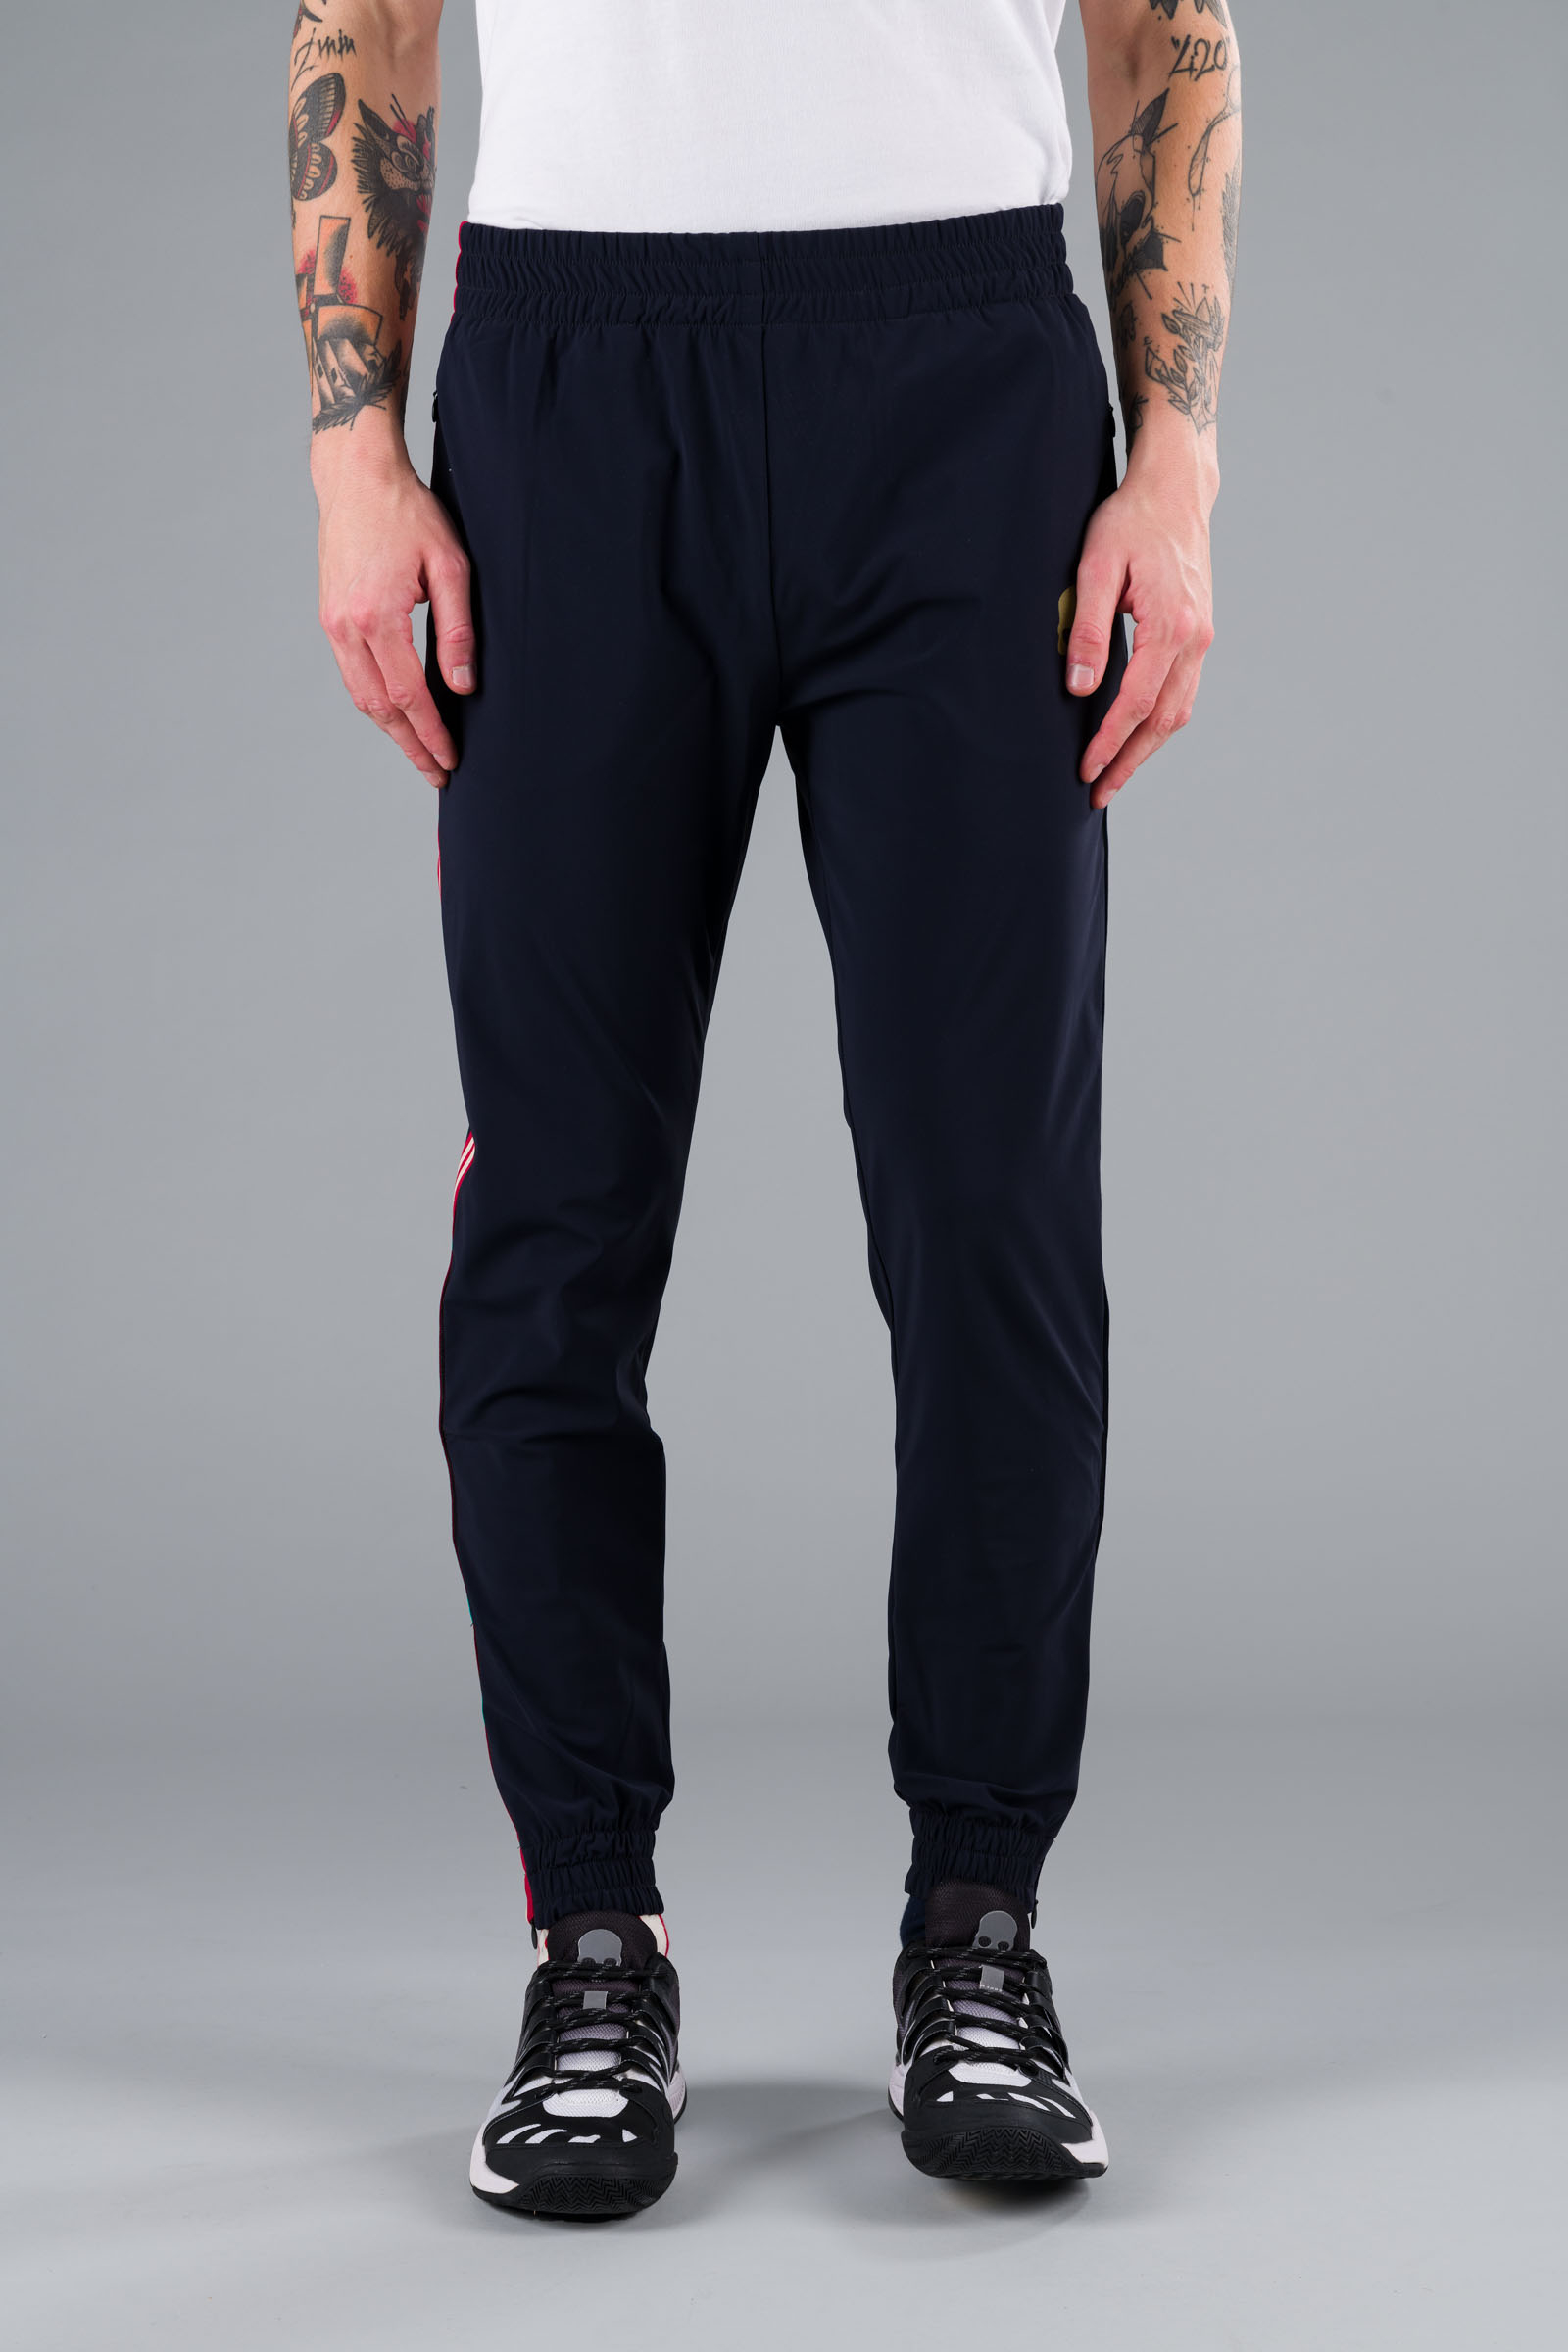 STAR TECH PANTS - Apparel - Hydrogen - Luxury Sportwear